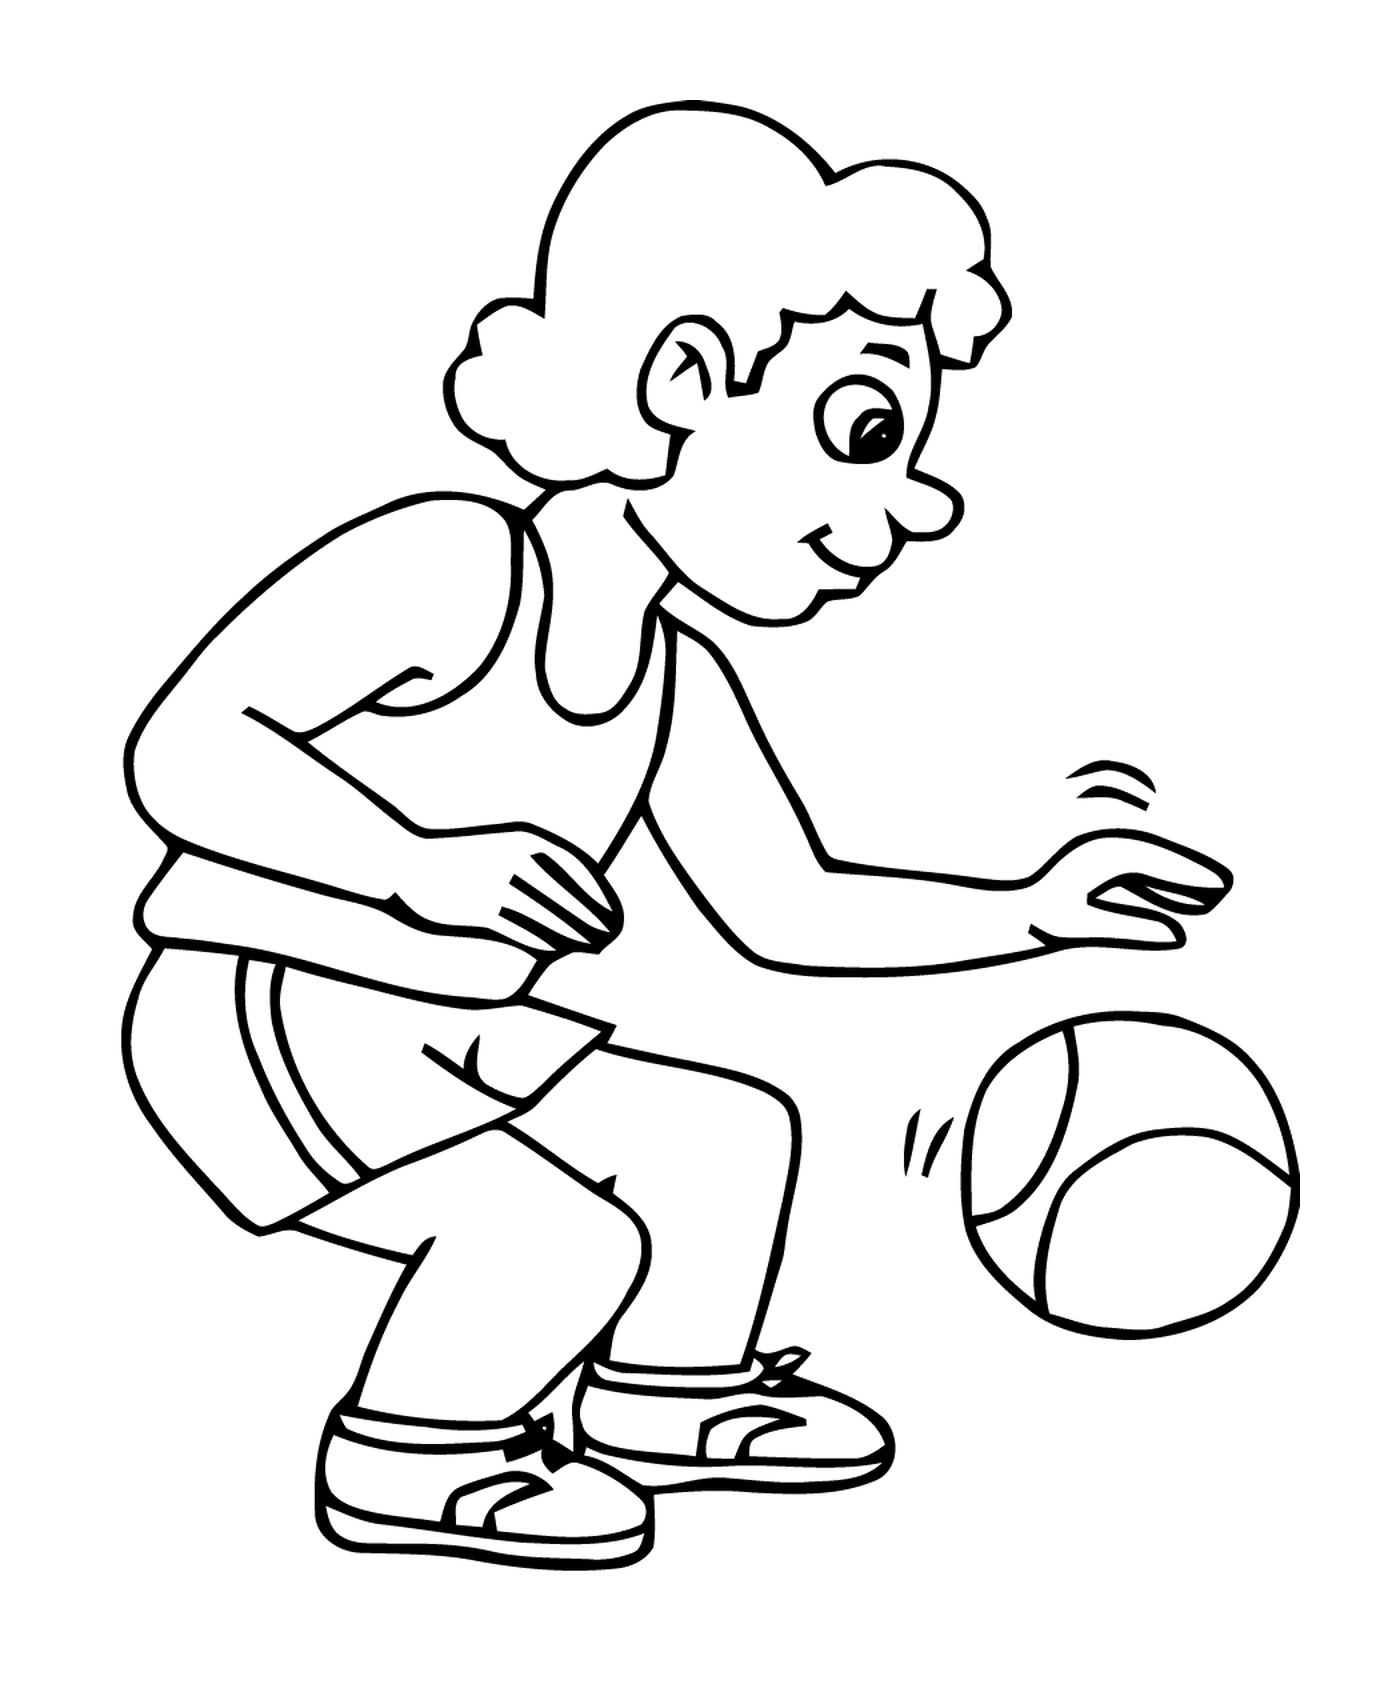   Sport, basketball, homme qui joue avec un ballon au sol 